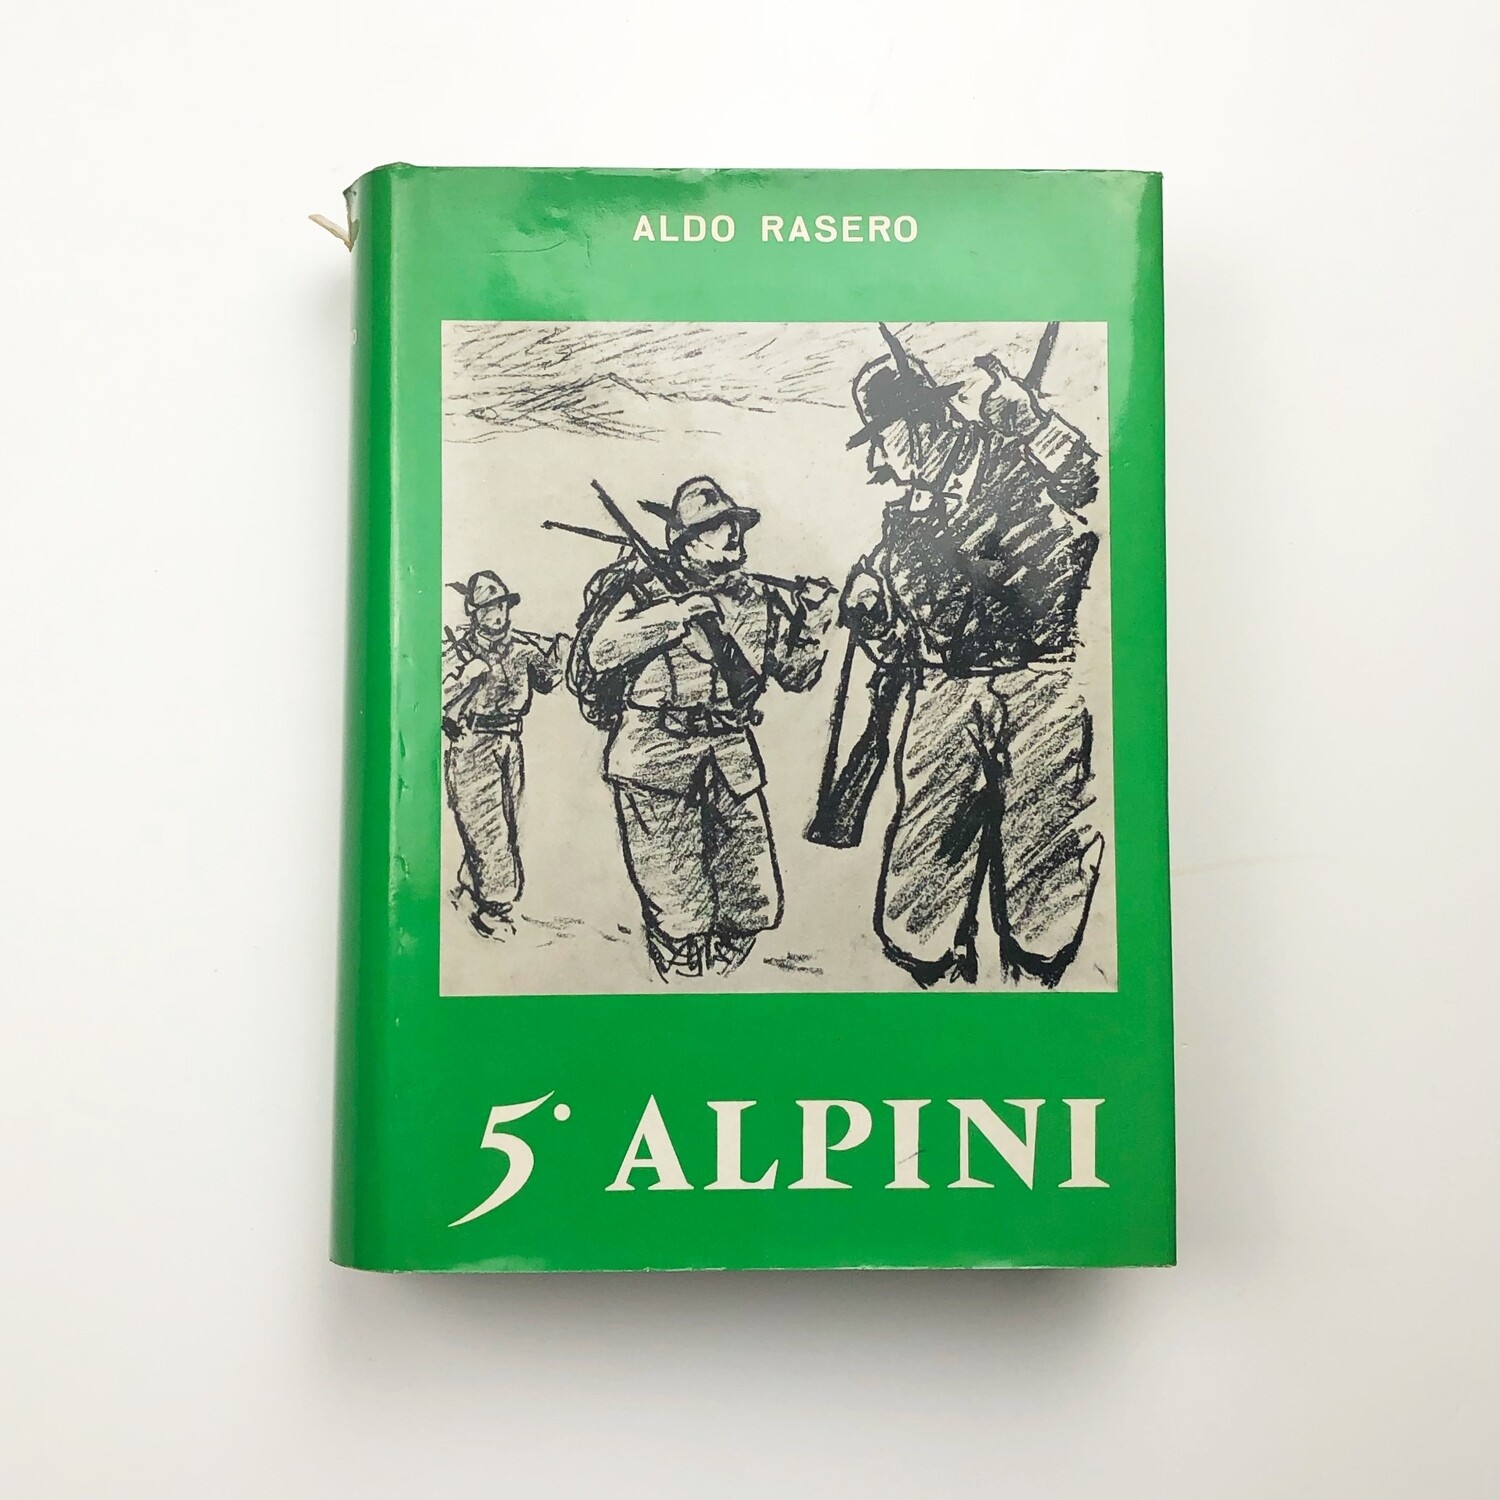 5° Alpini Di Aldo Rasero